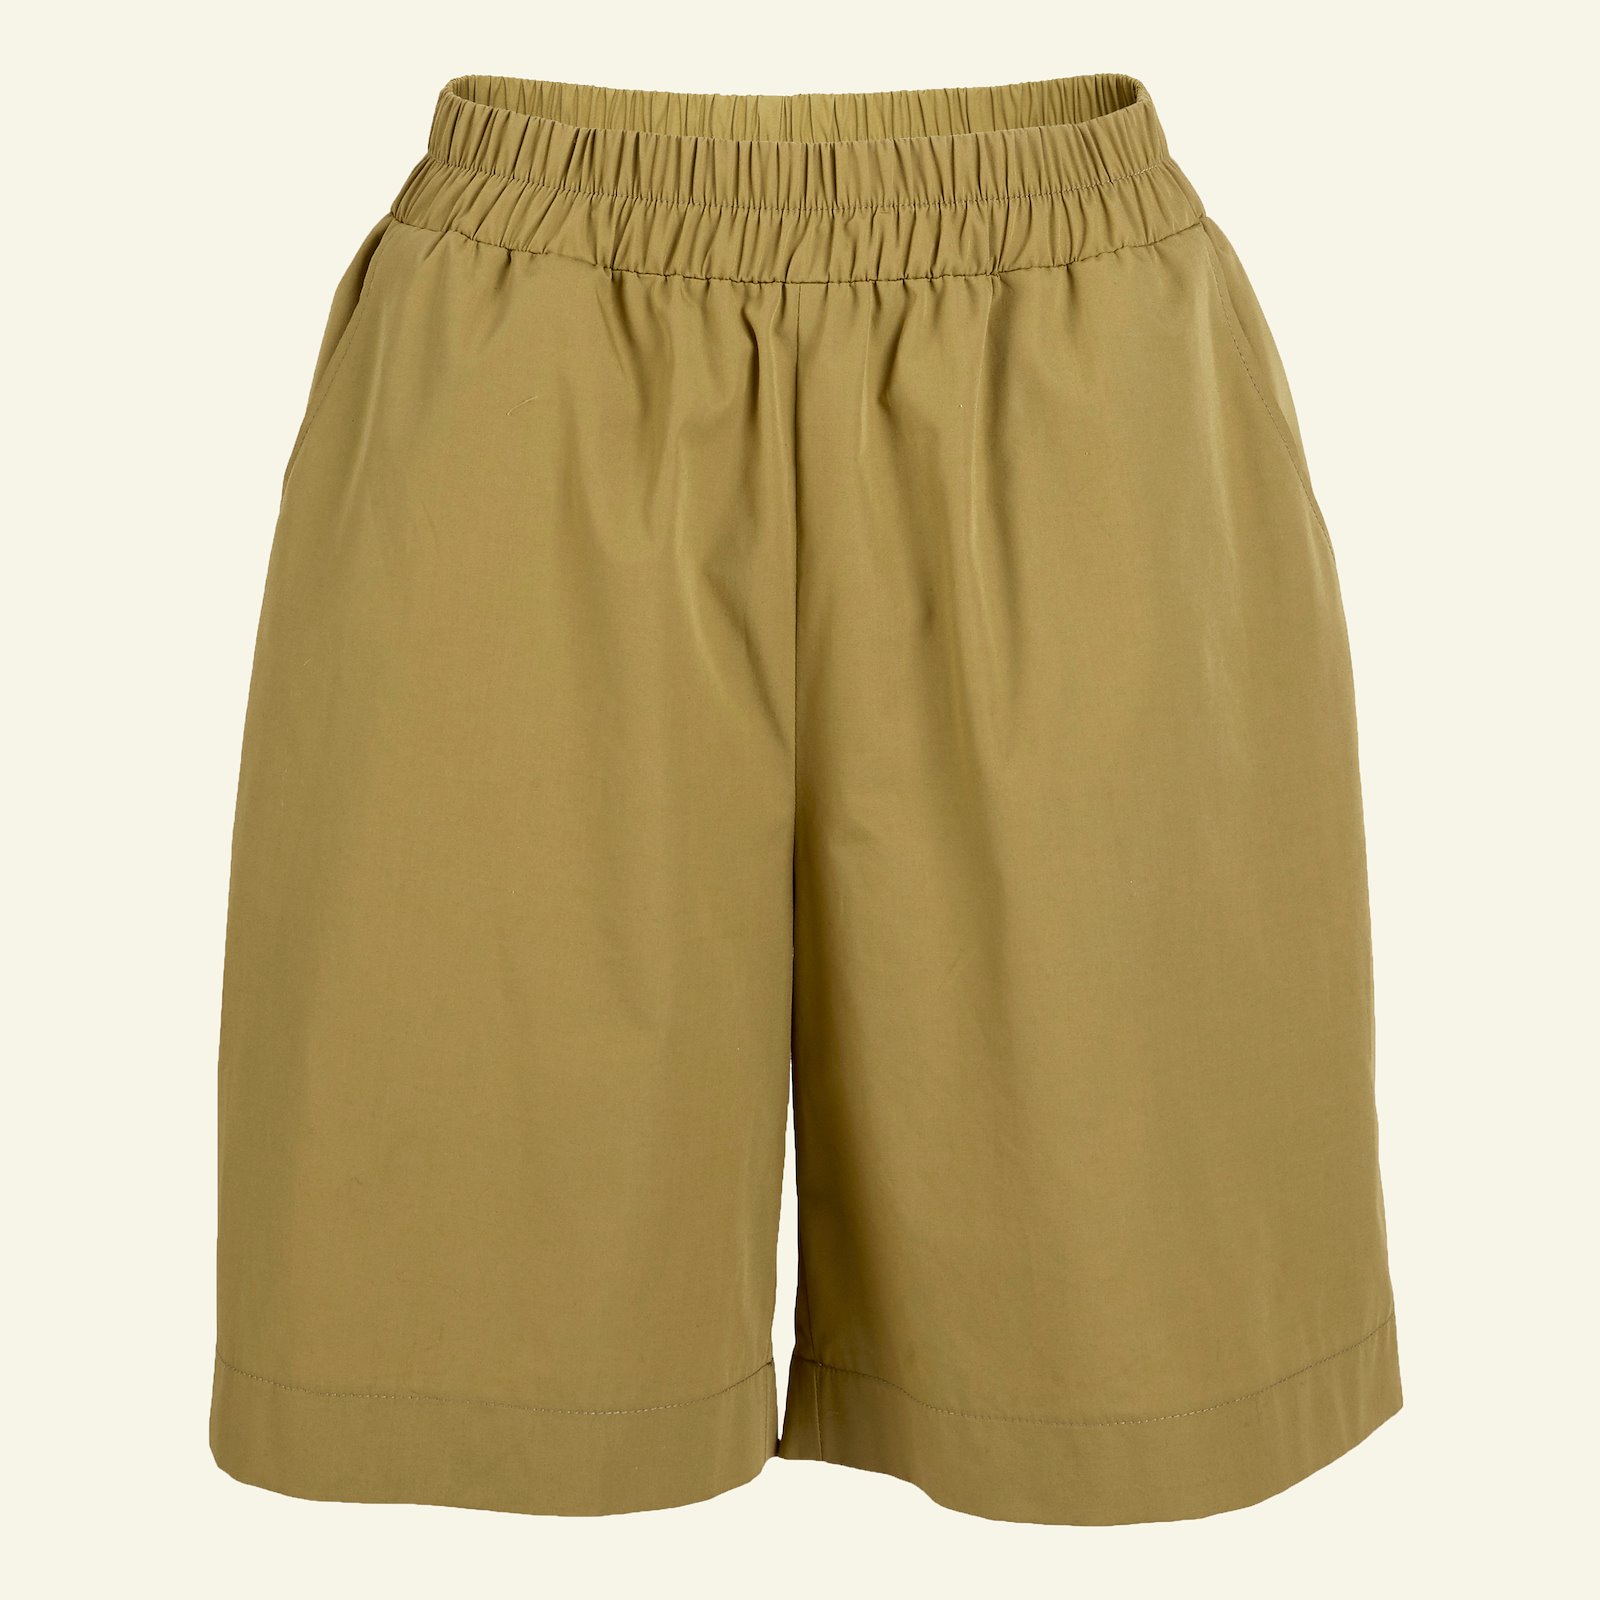 Bukse/shorts med vidde og lommer, 36 p20051_501926_sskit